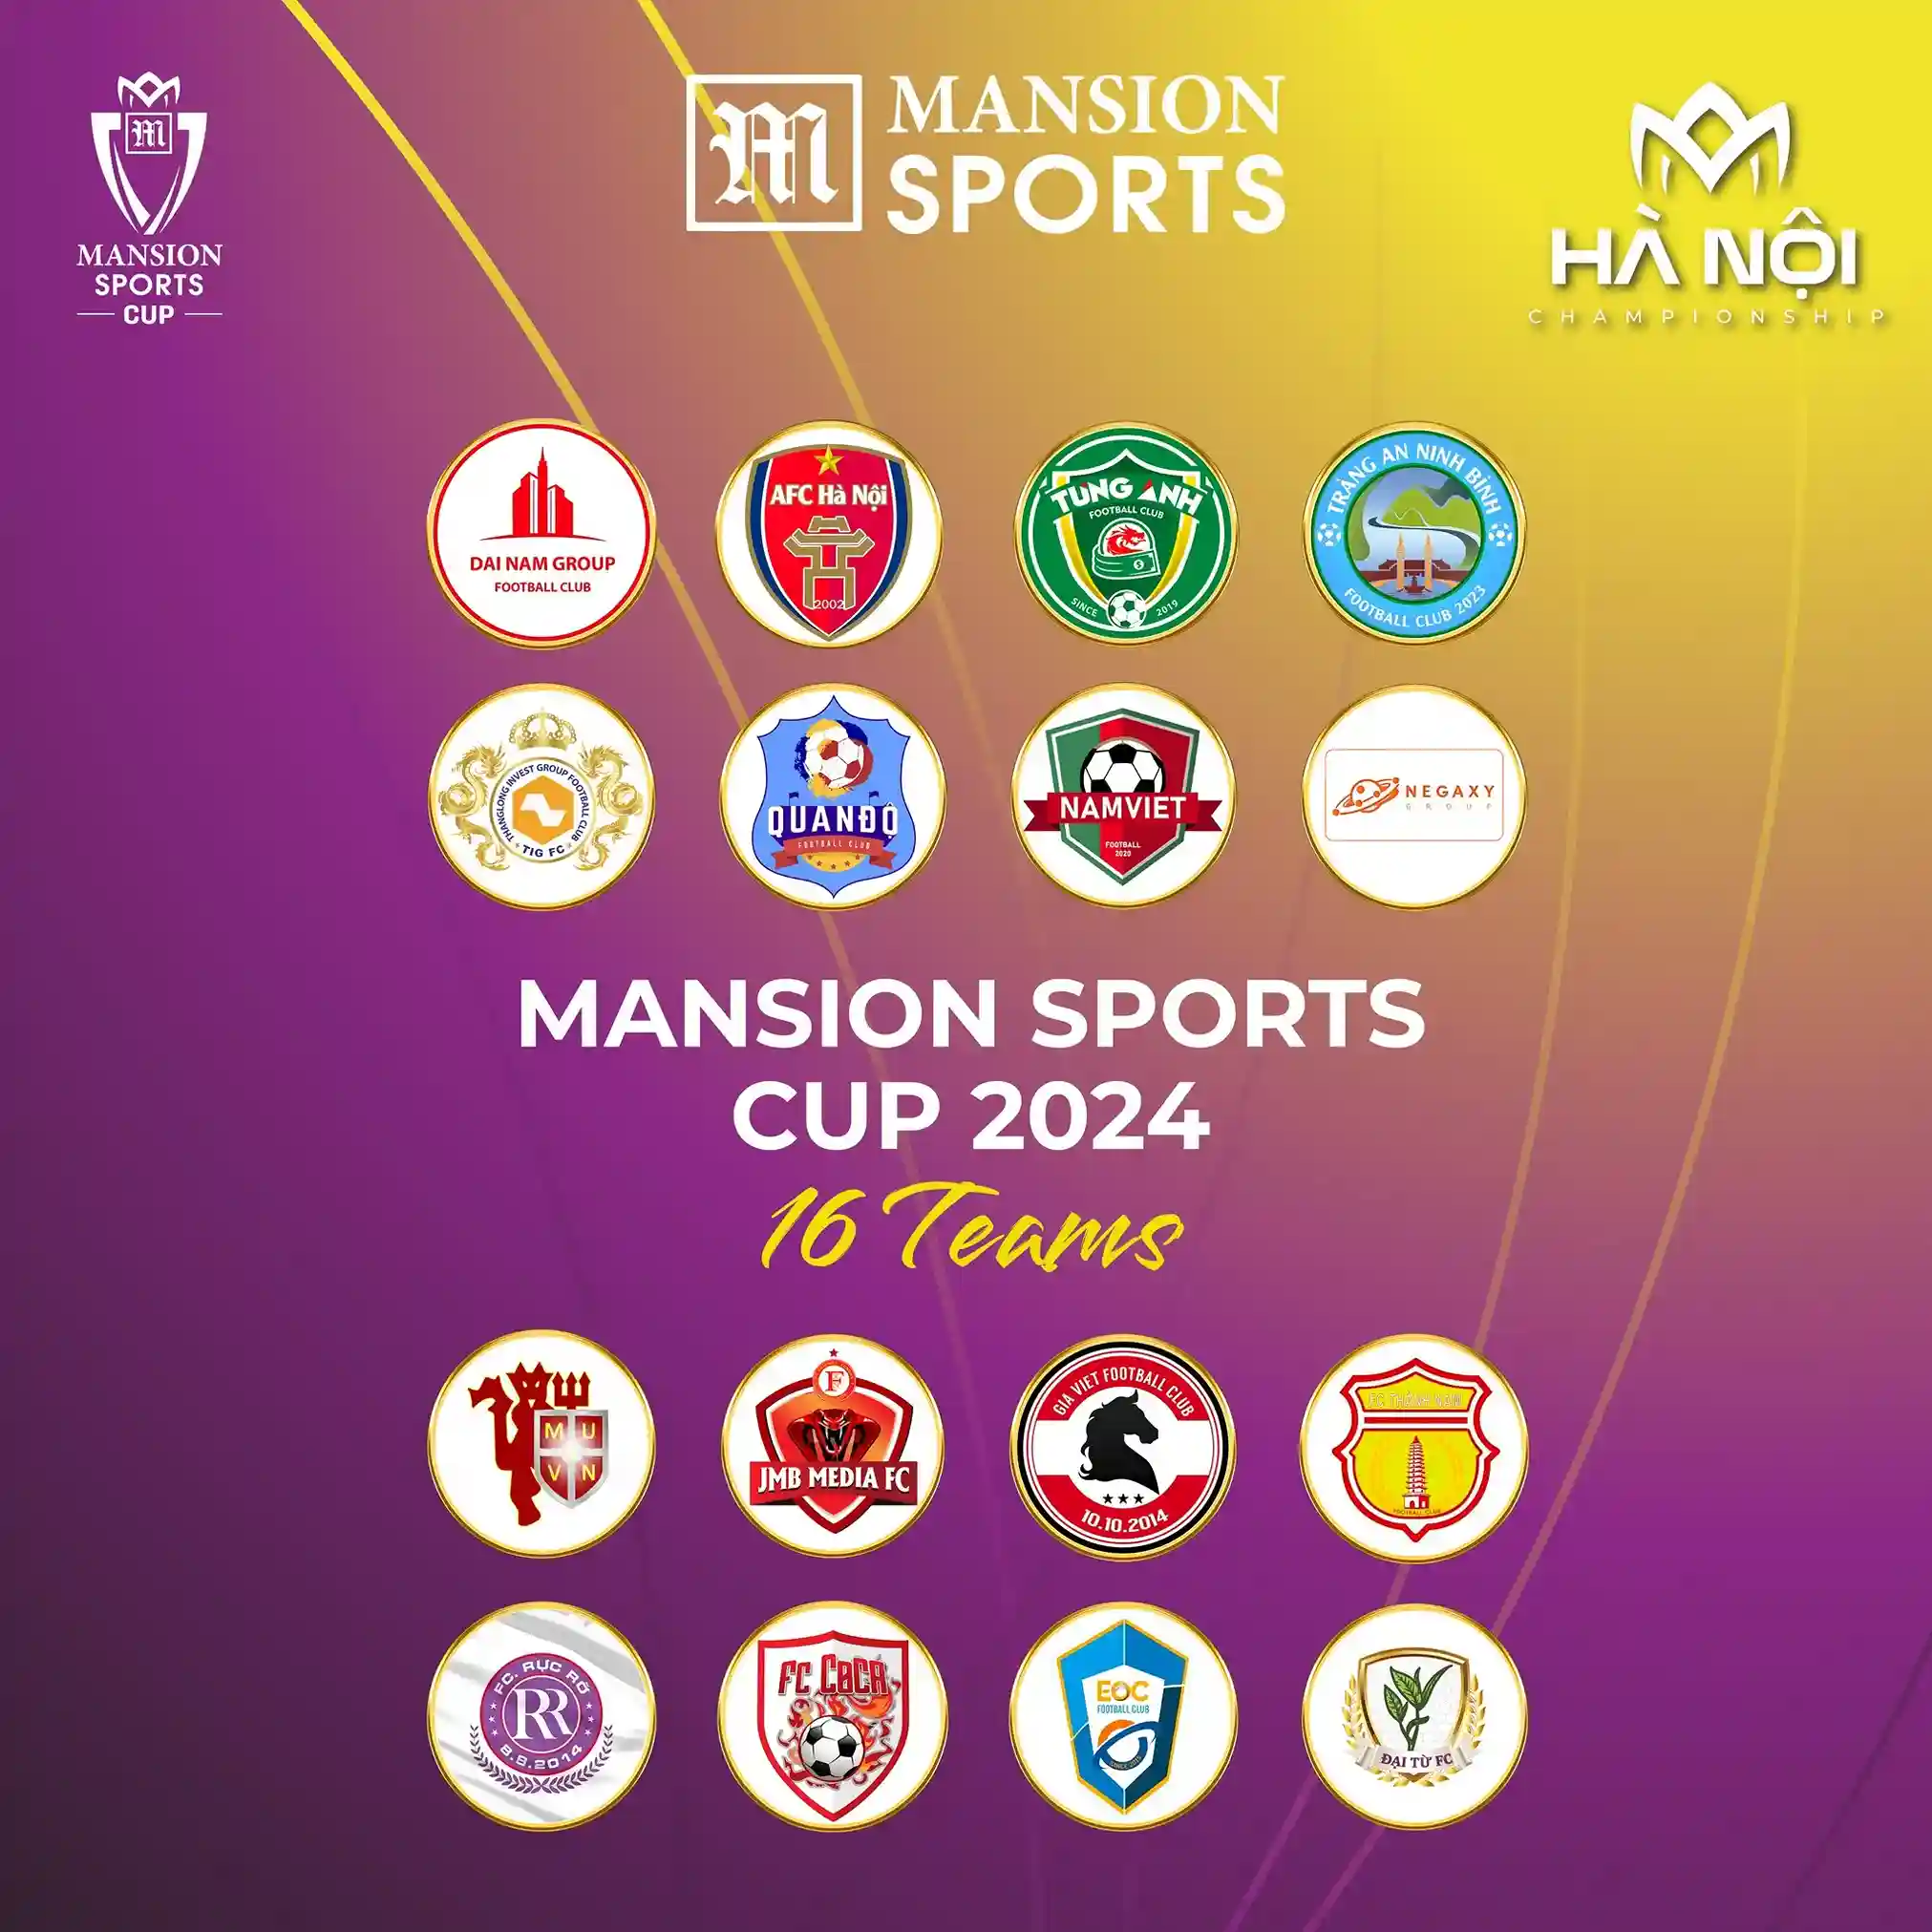 Danh sách 16 đội tham gia Mansion Sports Cup Hà Nội